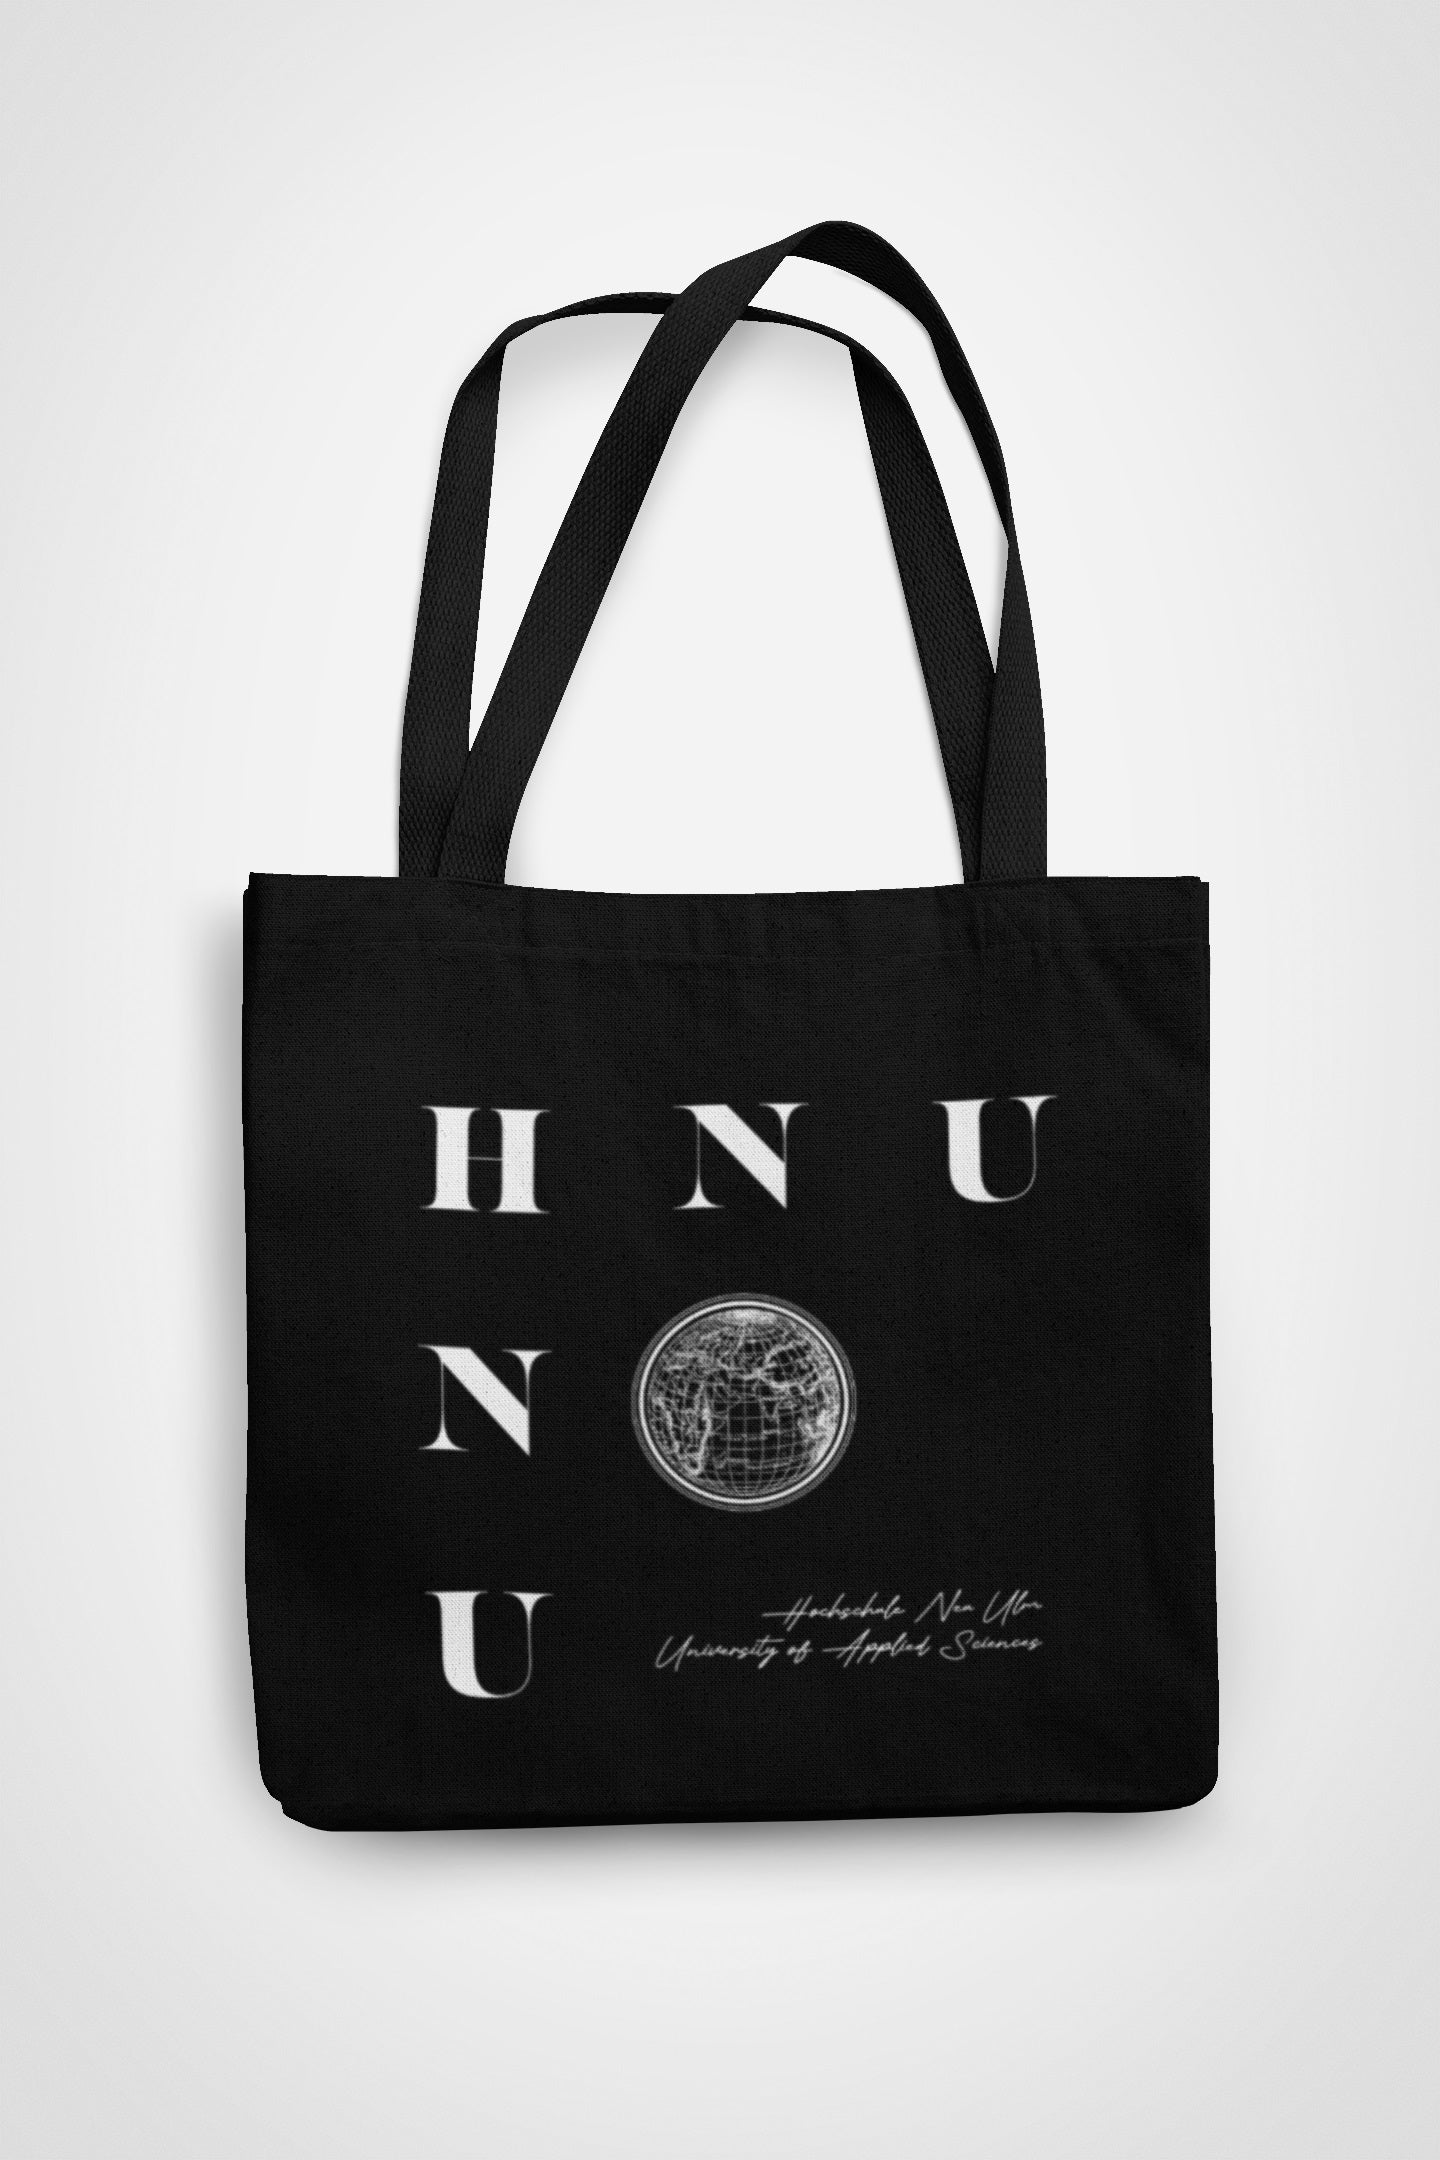 HNU Organic Fair Shopping Bag